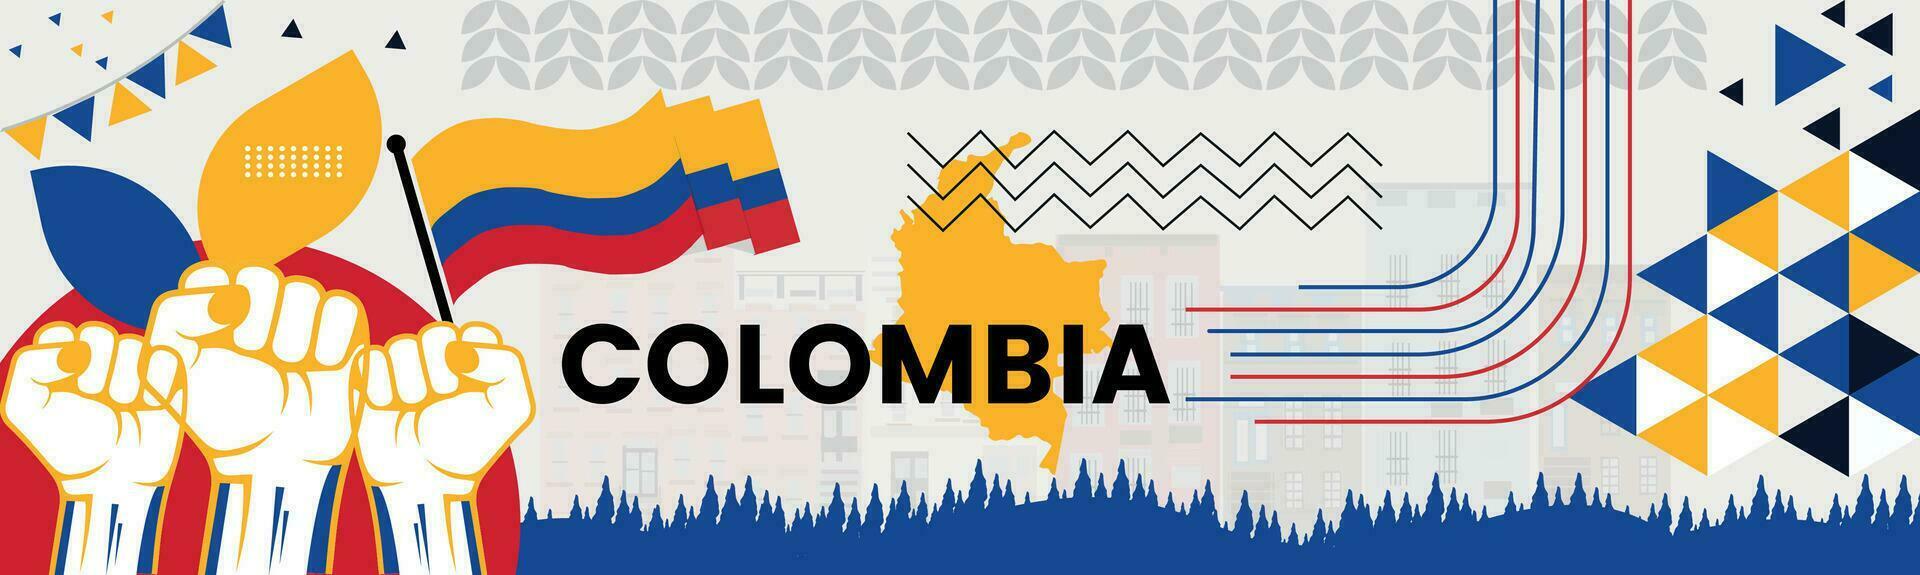 Colombia kaart en verheven vuisten. nationaal dag of onafhankelijkheid dag ontwerp voor Colombia viering. modern retro ontwerp met abstract pictogrammen. vector illustratie.